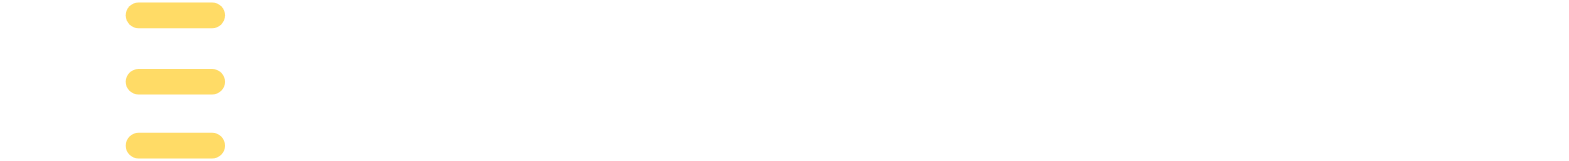 Jeffs' Brands Logo groß für dunkle Hintergründe (transparentes PNG)